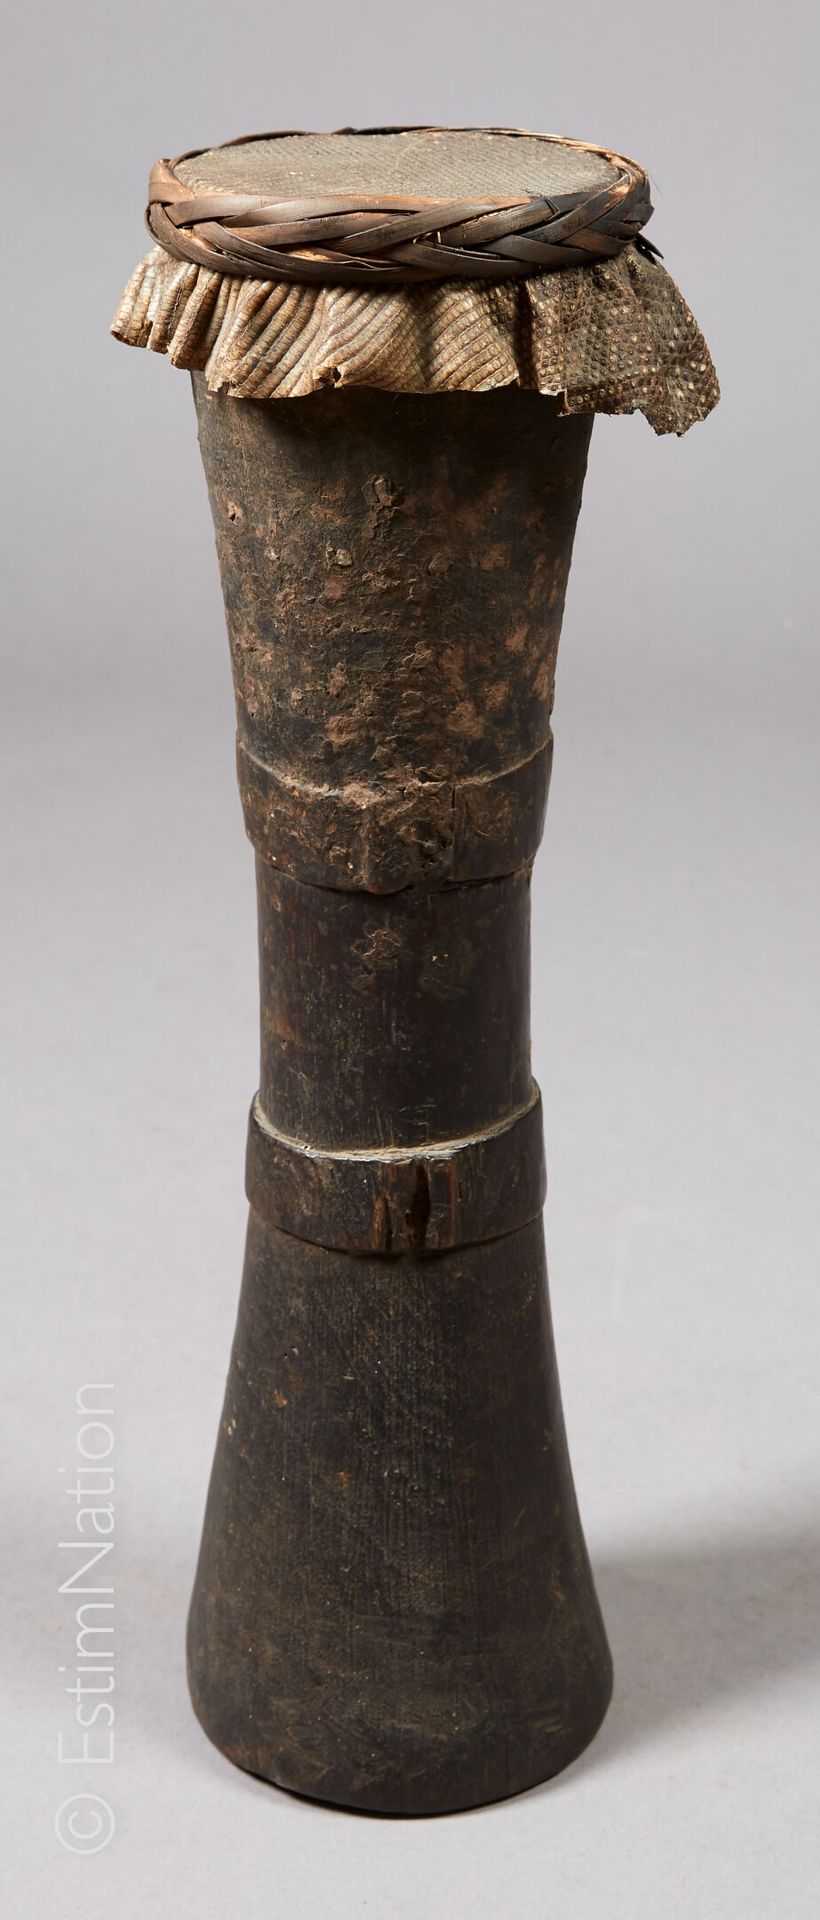 ASMAT - IRIAN JAYA 阿斯玛特-伊里安-贾亚



熏黑的木头、藤条和爬行动物皮制成的沙漏鼓，有圆环装饰。



高度：49厘米 - 直径：14&hellip;